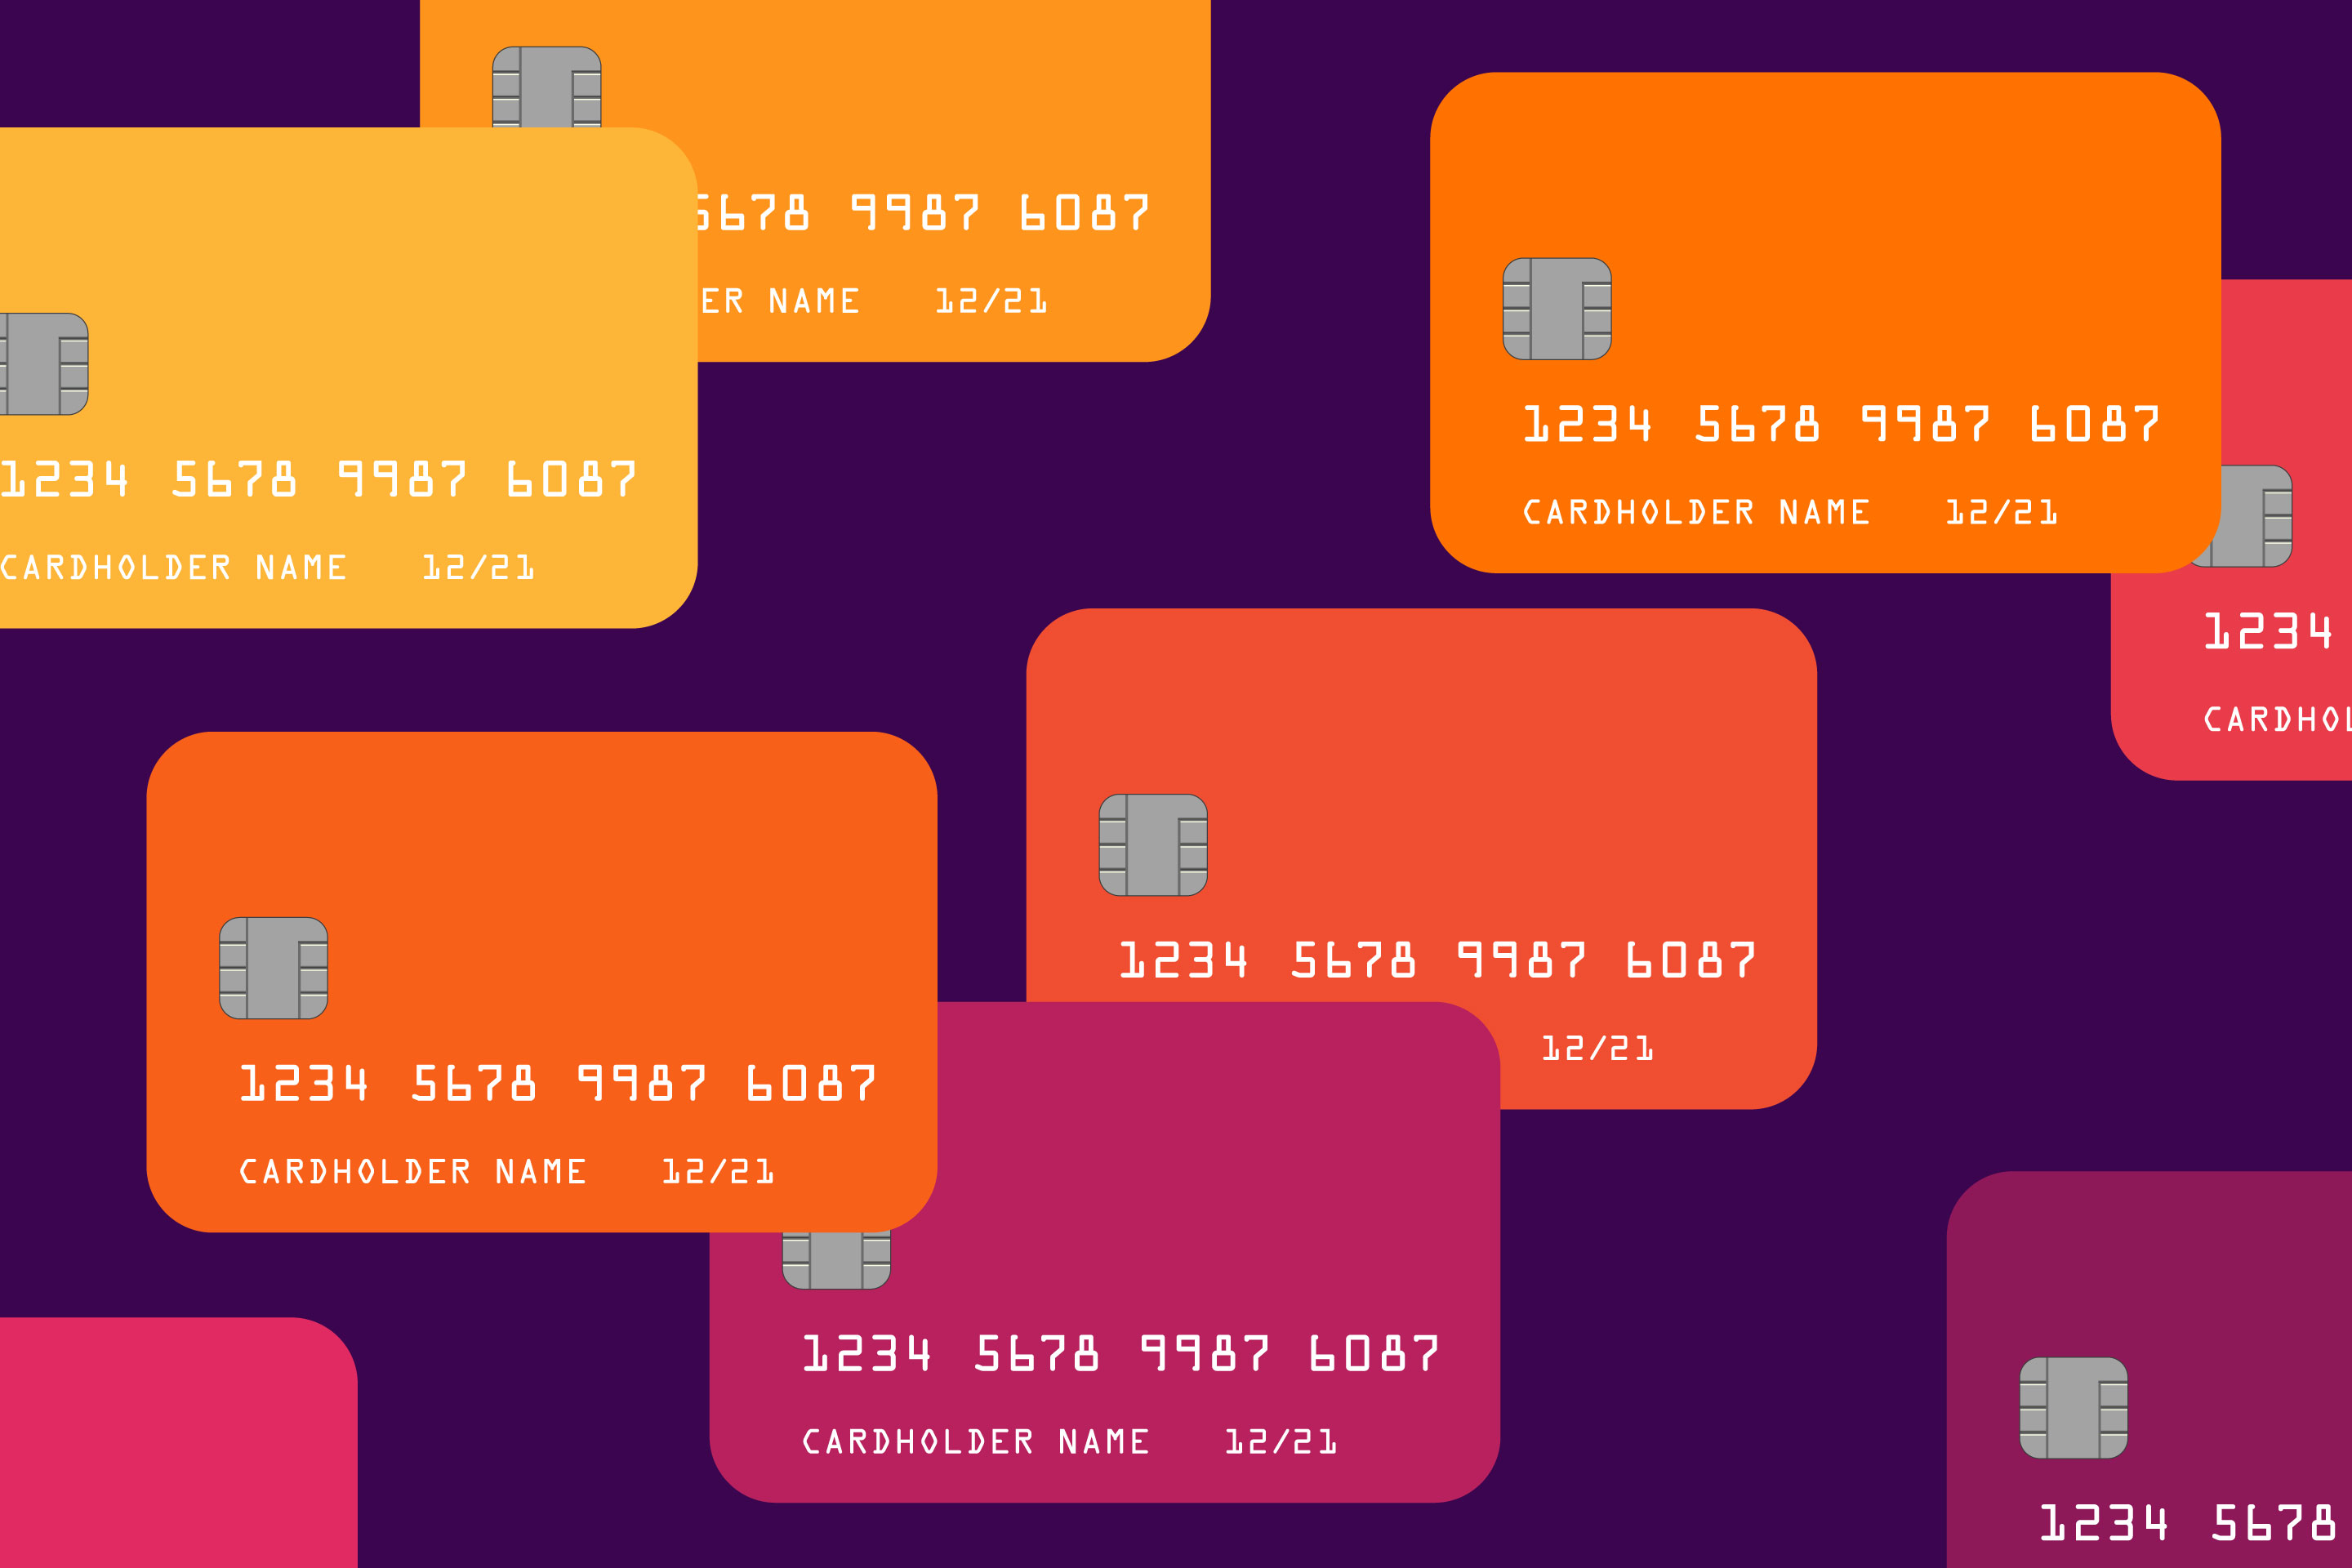 5-expert-ways-to-maximize-your-credit-card-rewards-money